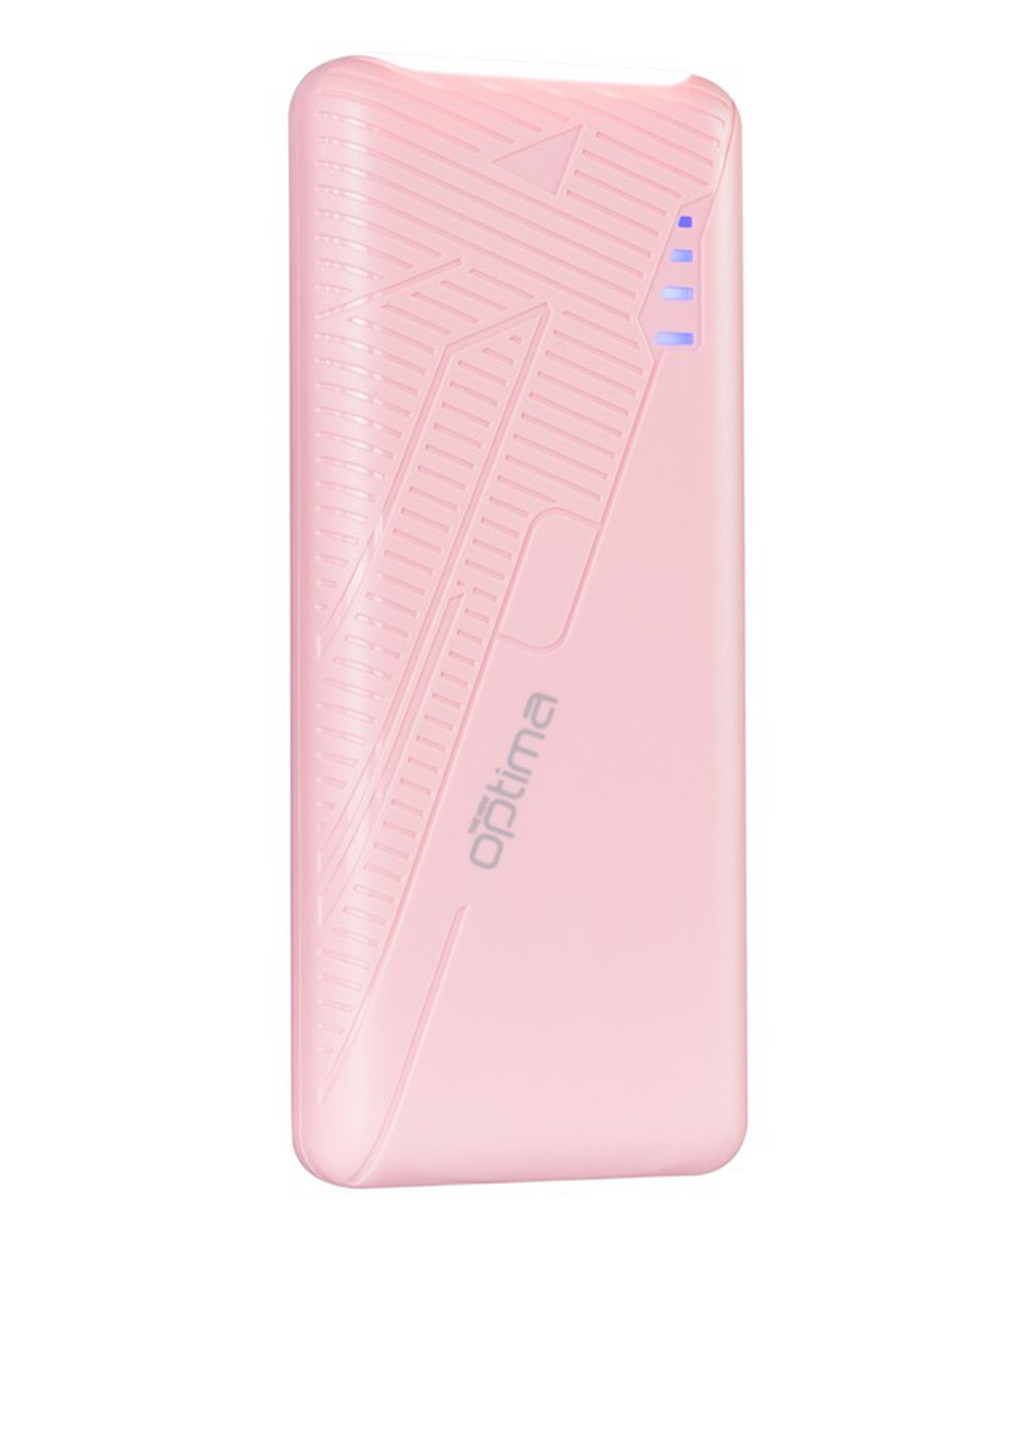 Универсальная батарея OPB-10 10000mAh Pink (павербанк) Optima OPB-10 10000mAh встроенный фонарик